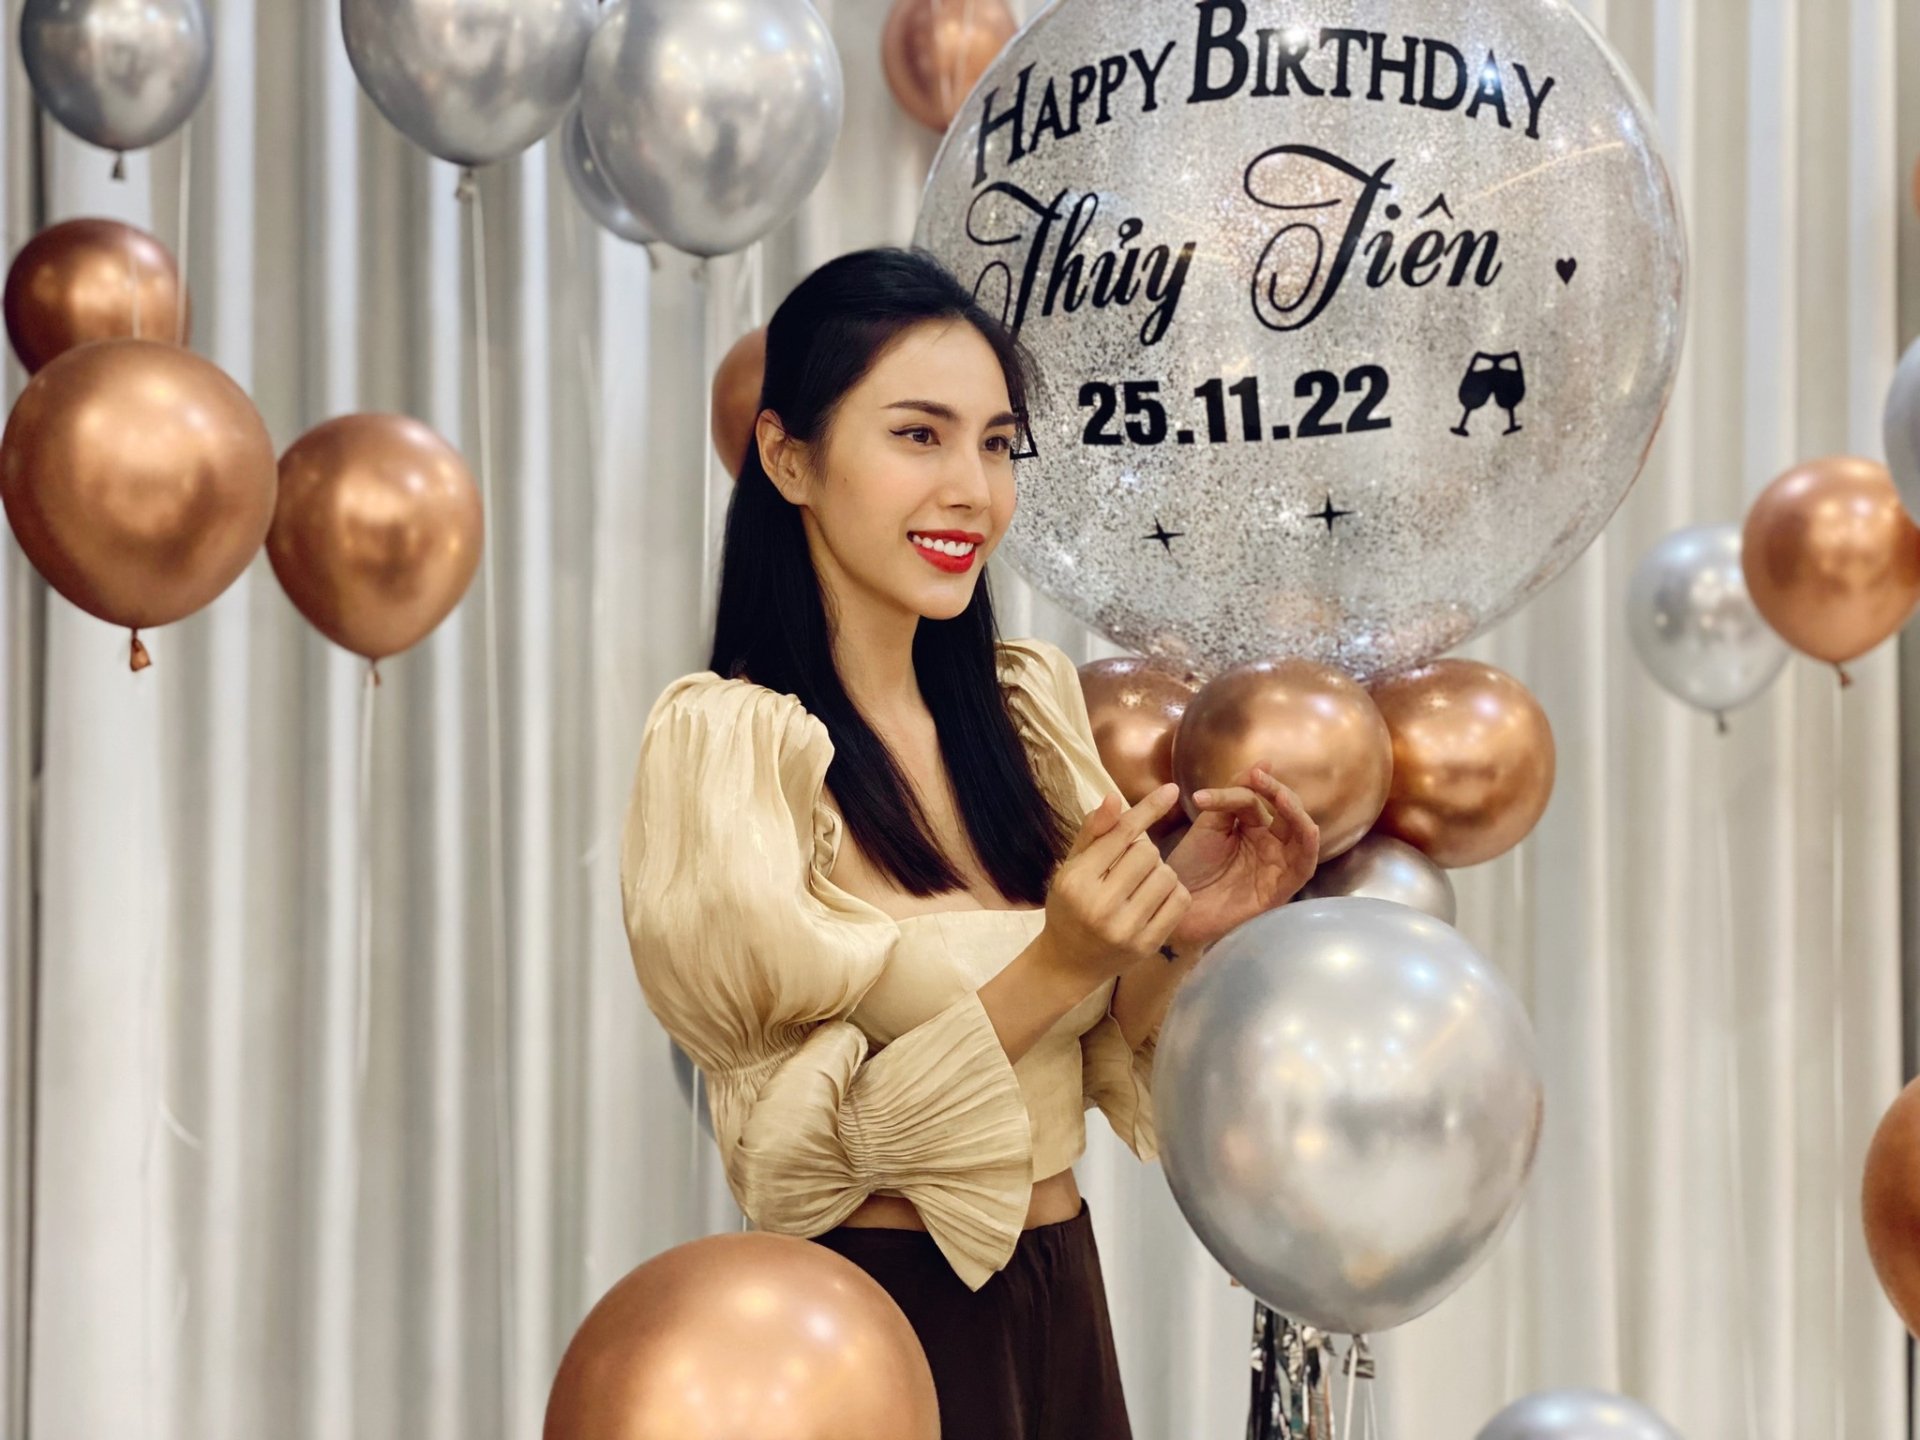 Ca sĩ Thuỷ Tiên được fan tổ chức sinh nhật bất ngờ, gửi gắm: "Trở thành fan chị là nghiệp của tụi em"-1